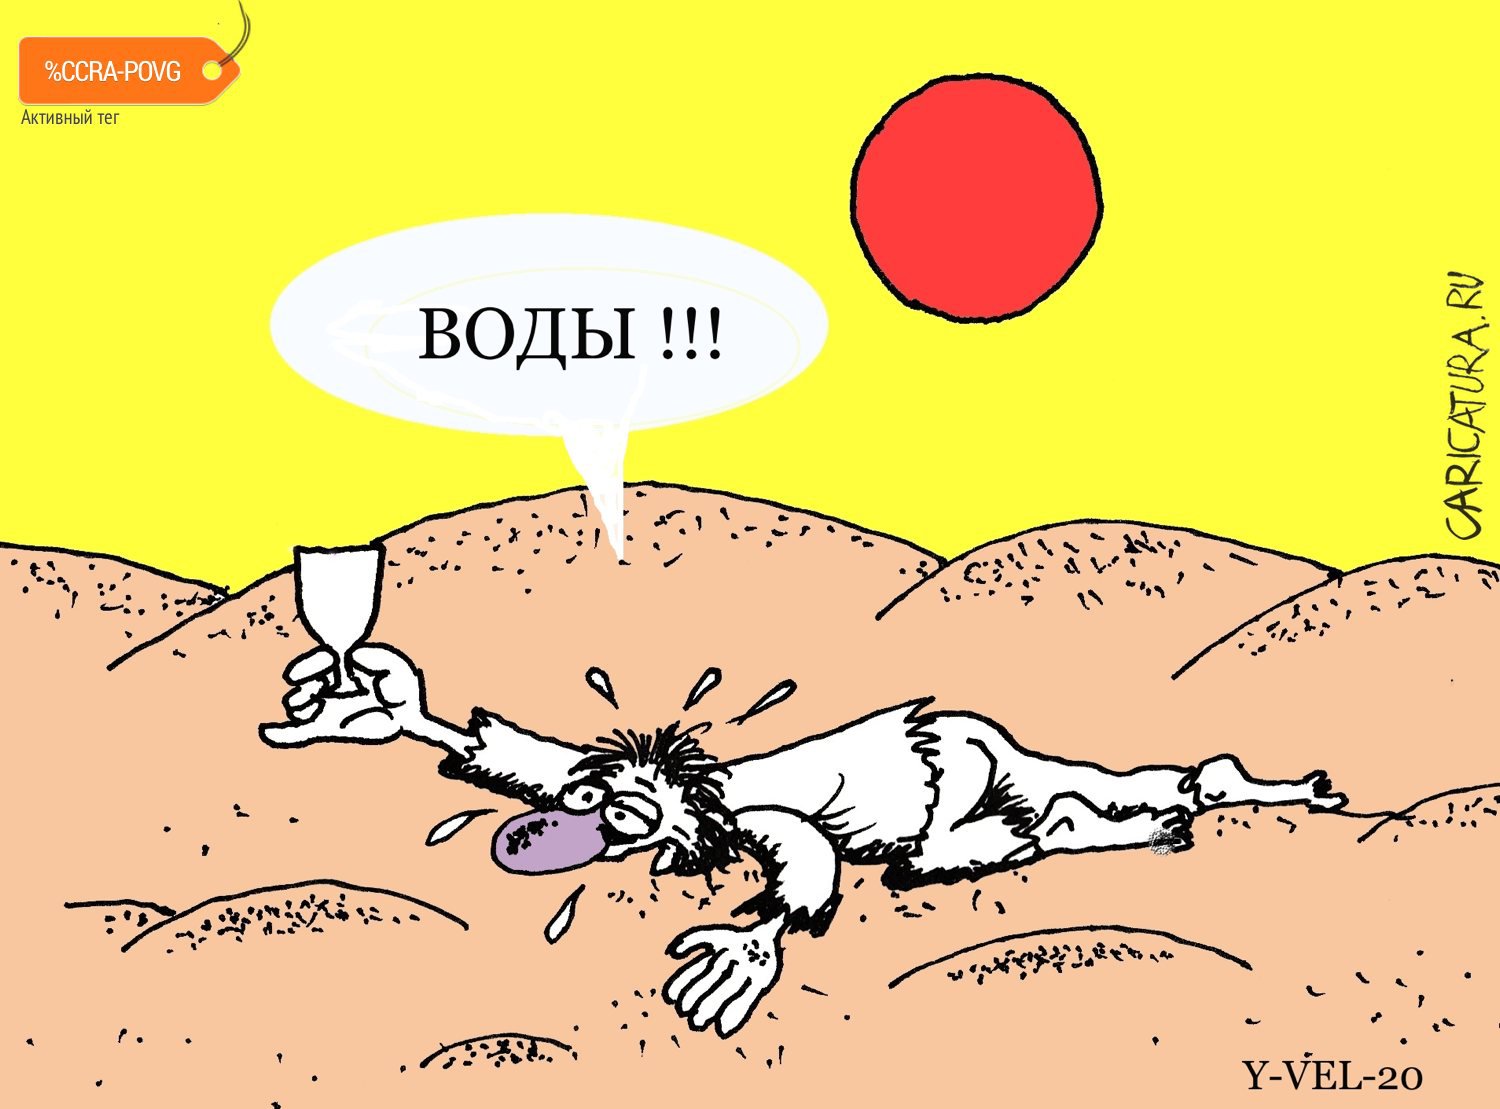 Карикатура "Воды...", Юрий Величко